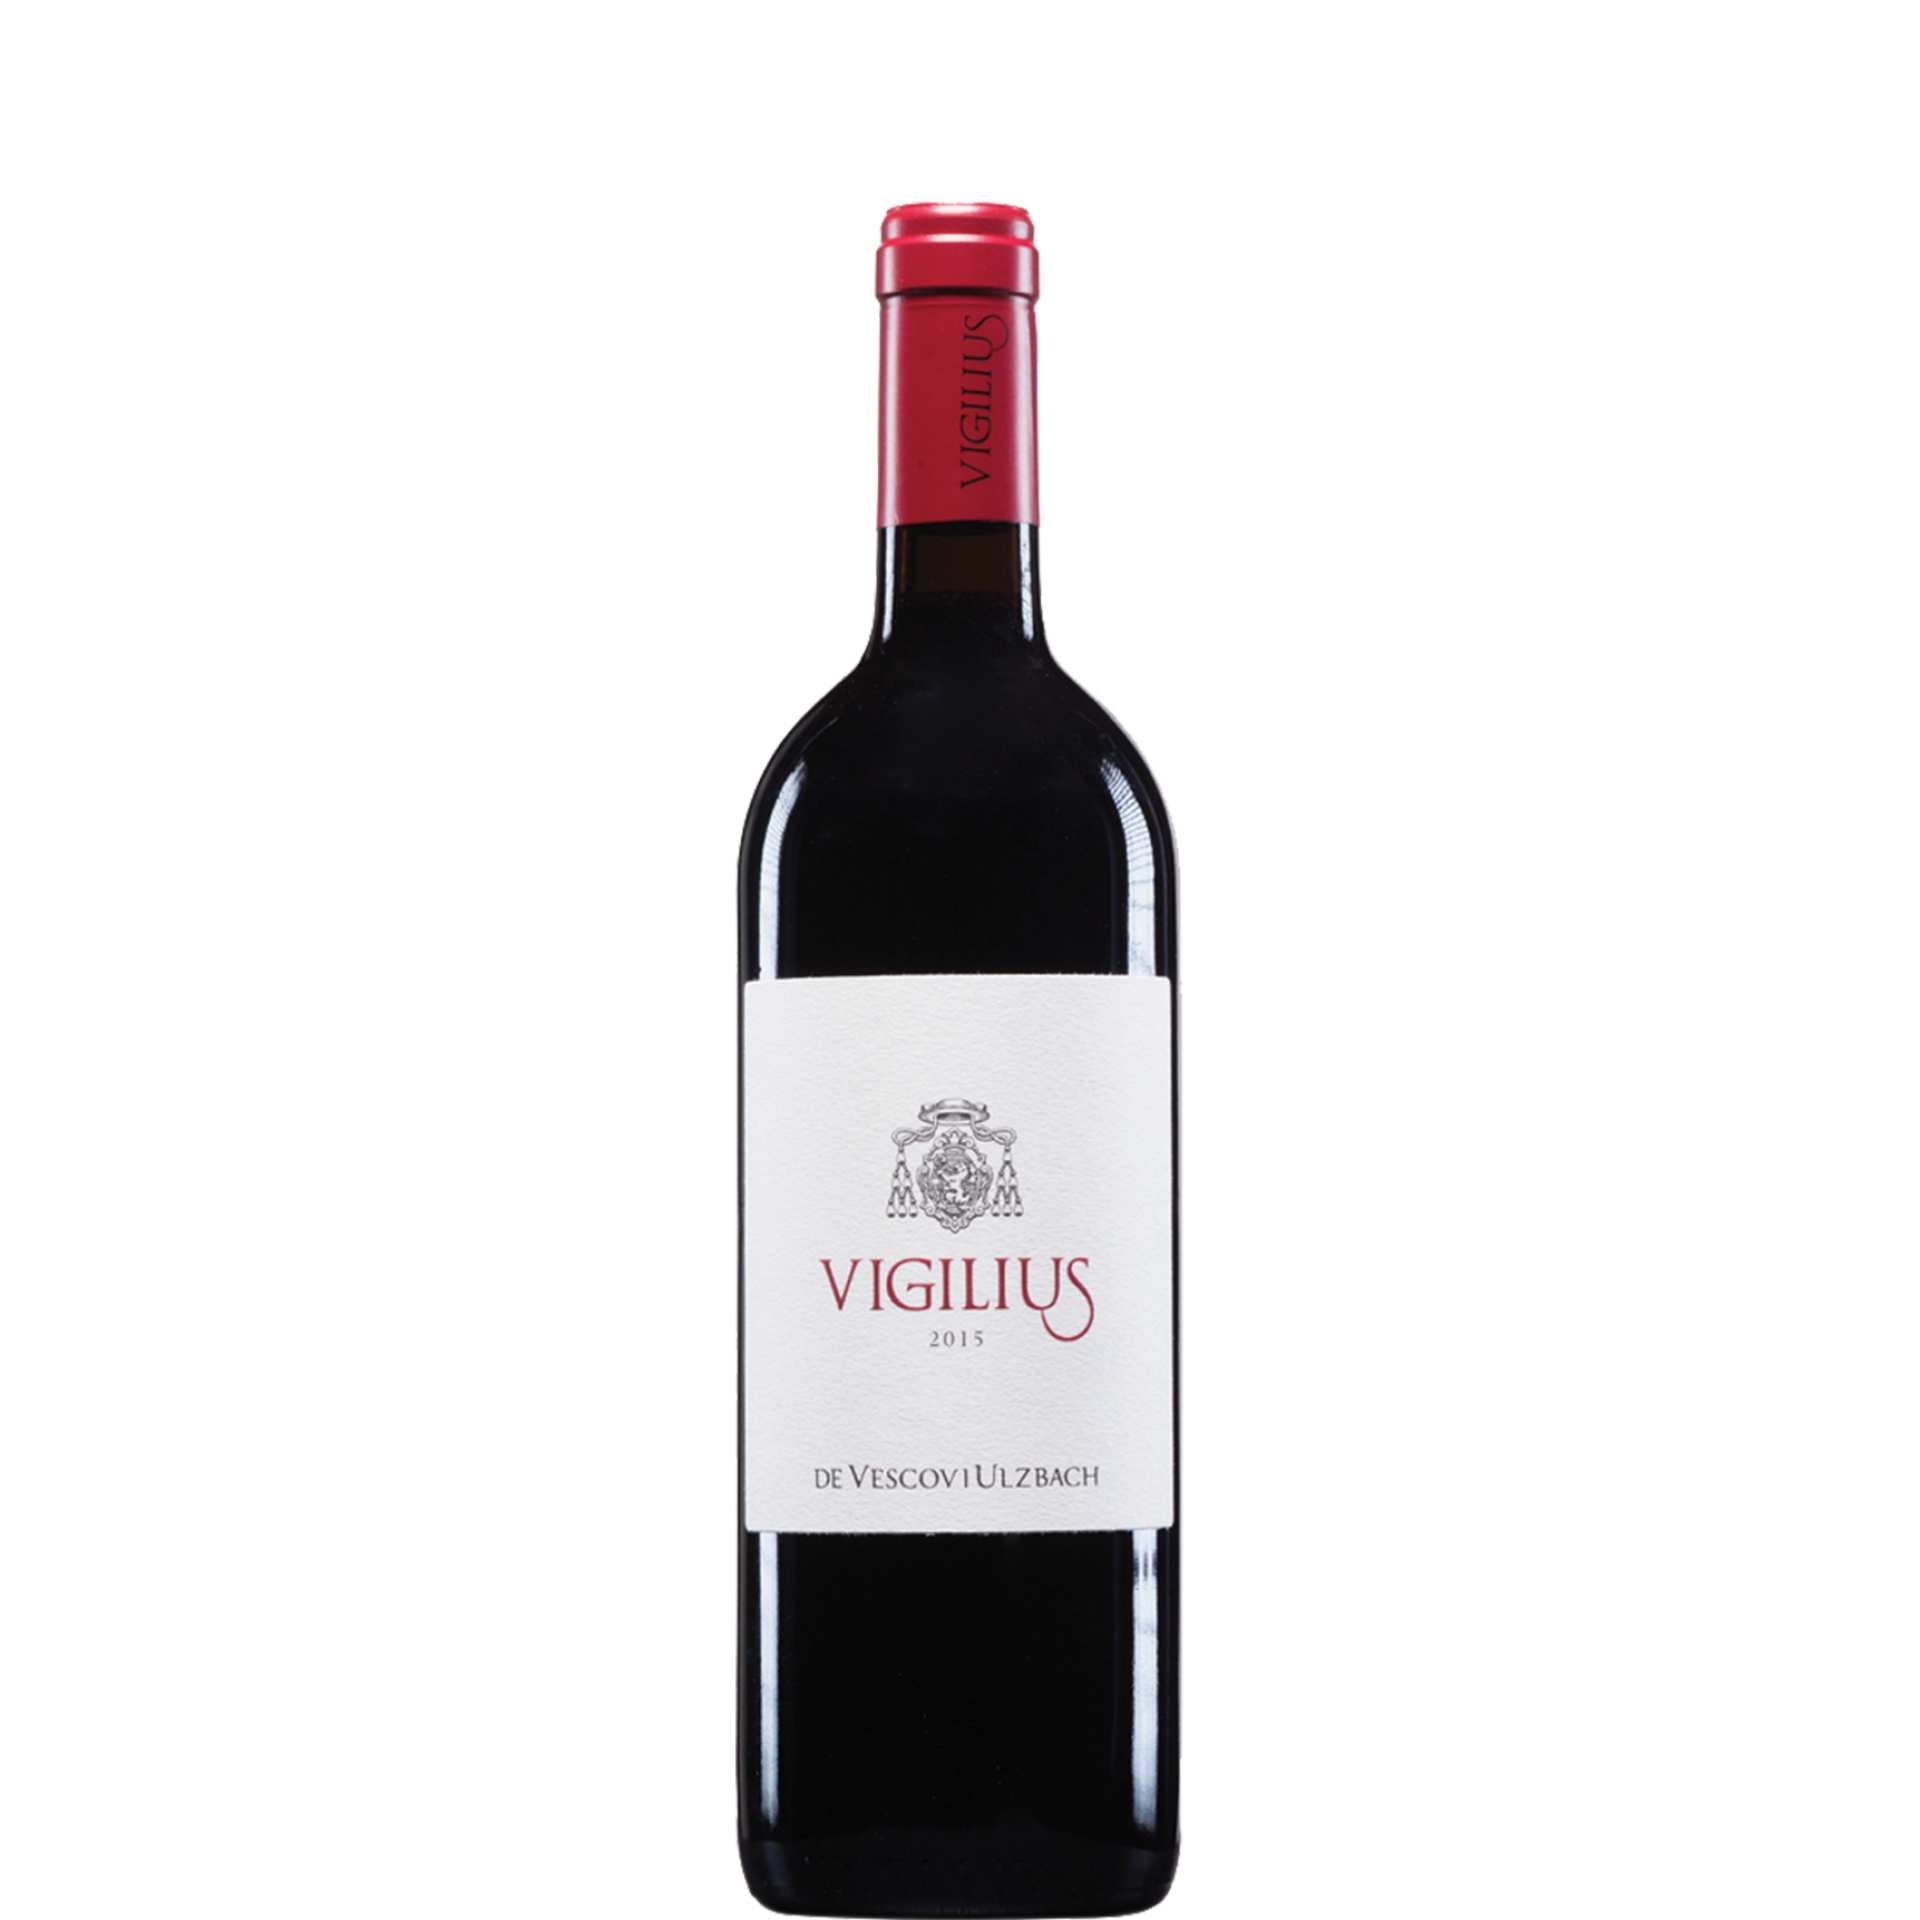 De Vescovi Ulzbach Teroldego Vigilius vino rosso trentino su sfondo bianco